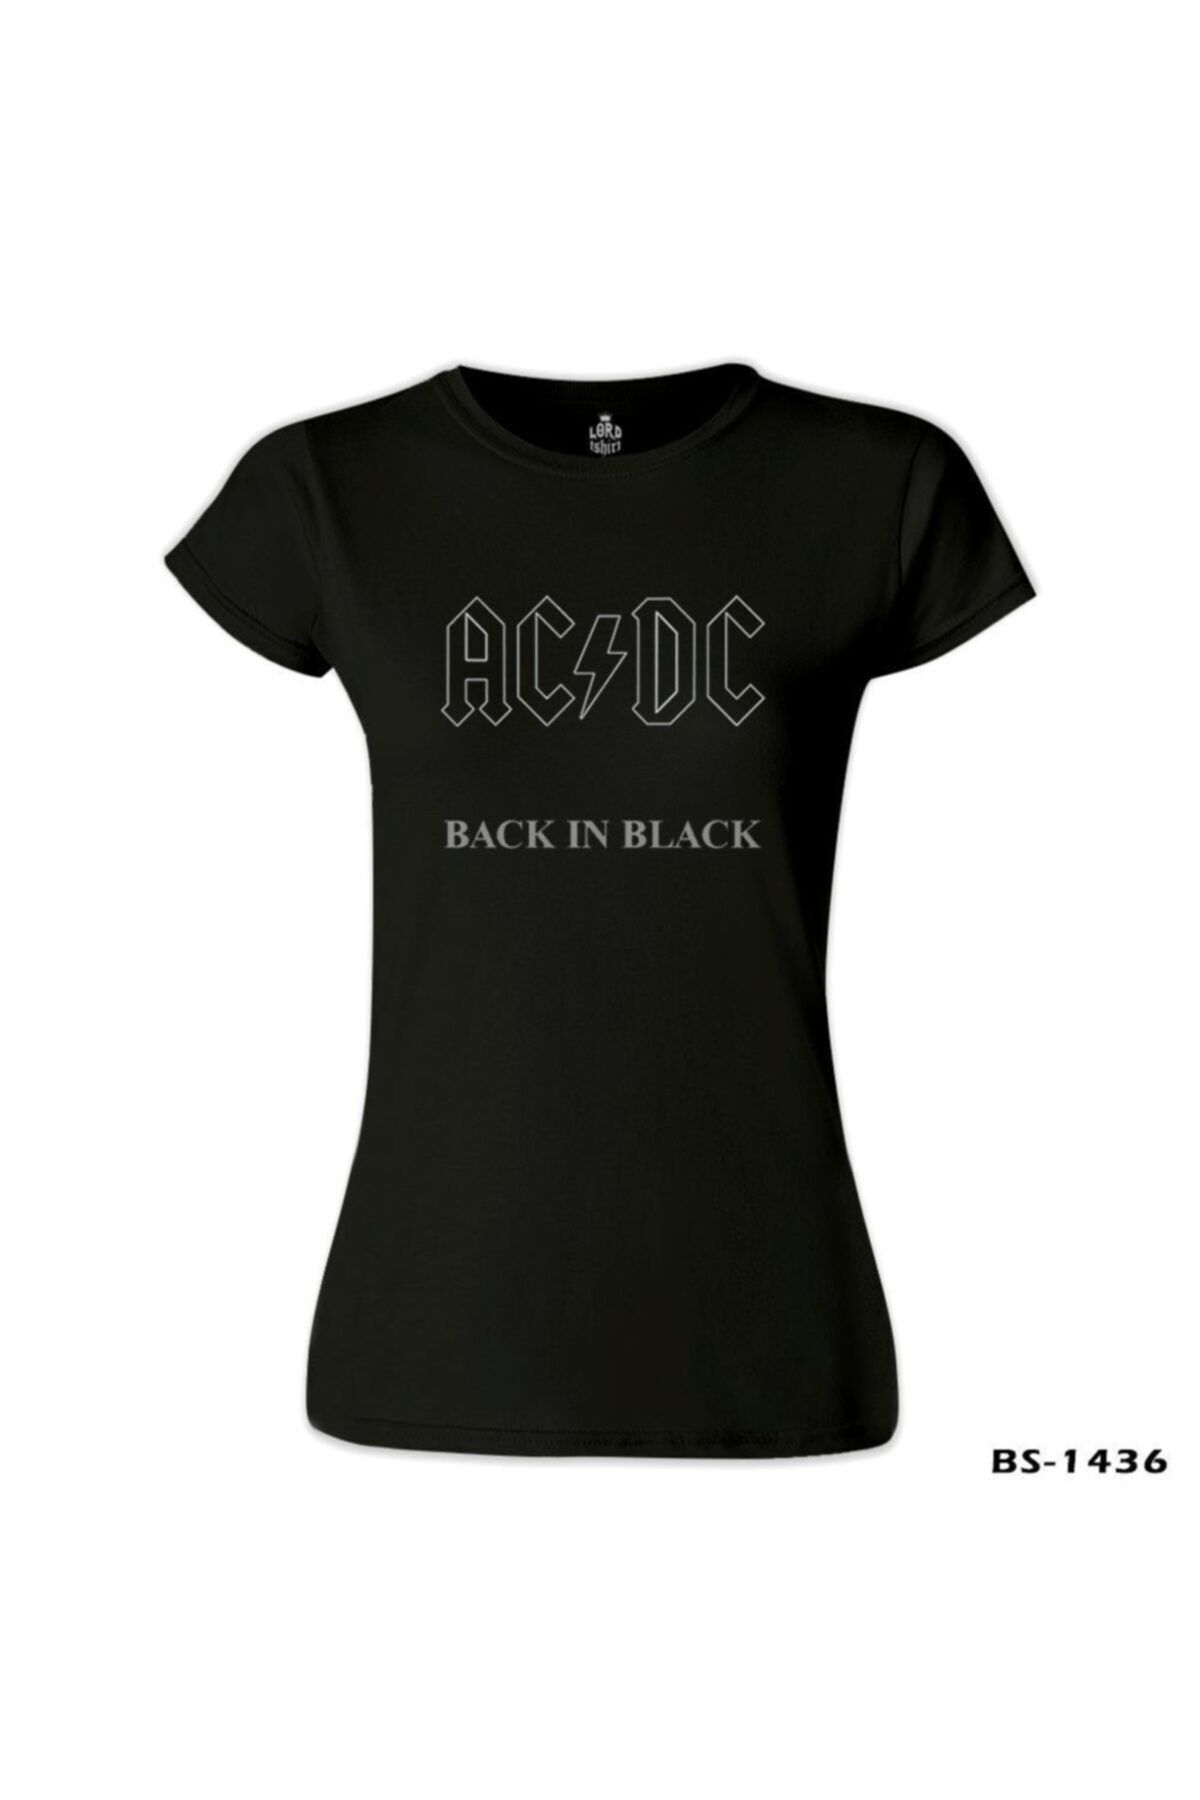 Lord T-Shirt Kadın Siyah AC DC Black İn Black Tshirt